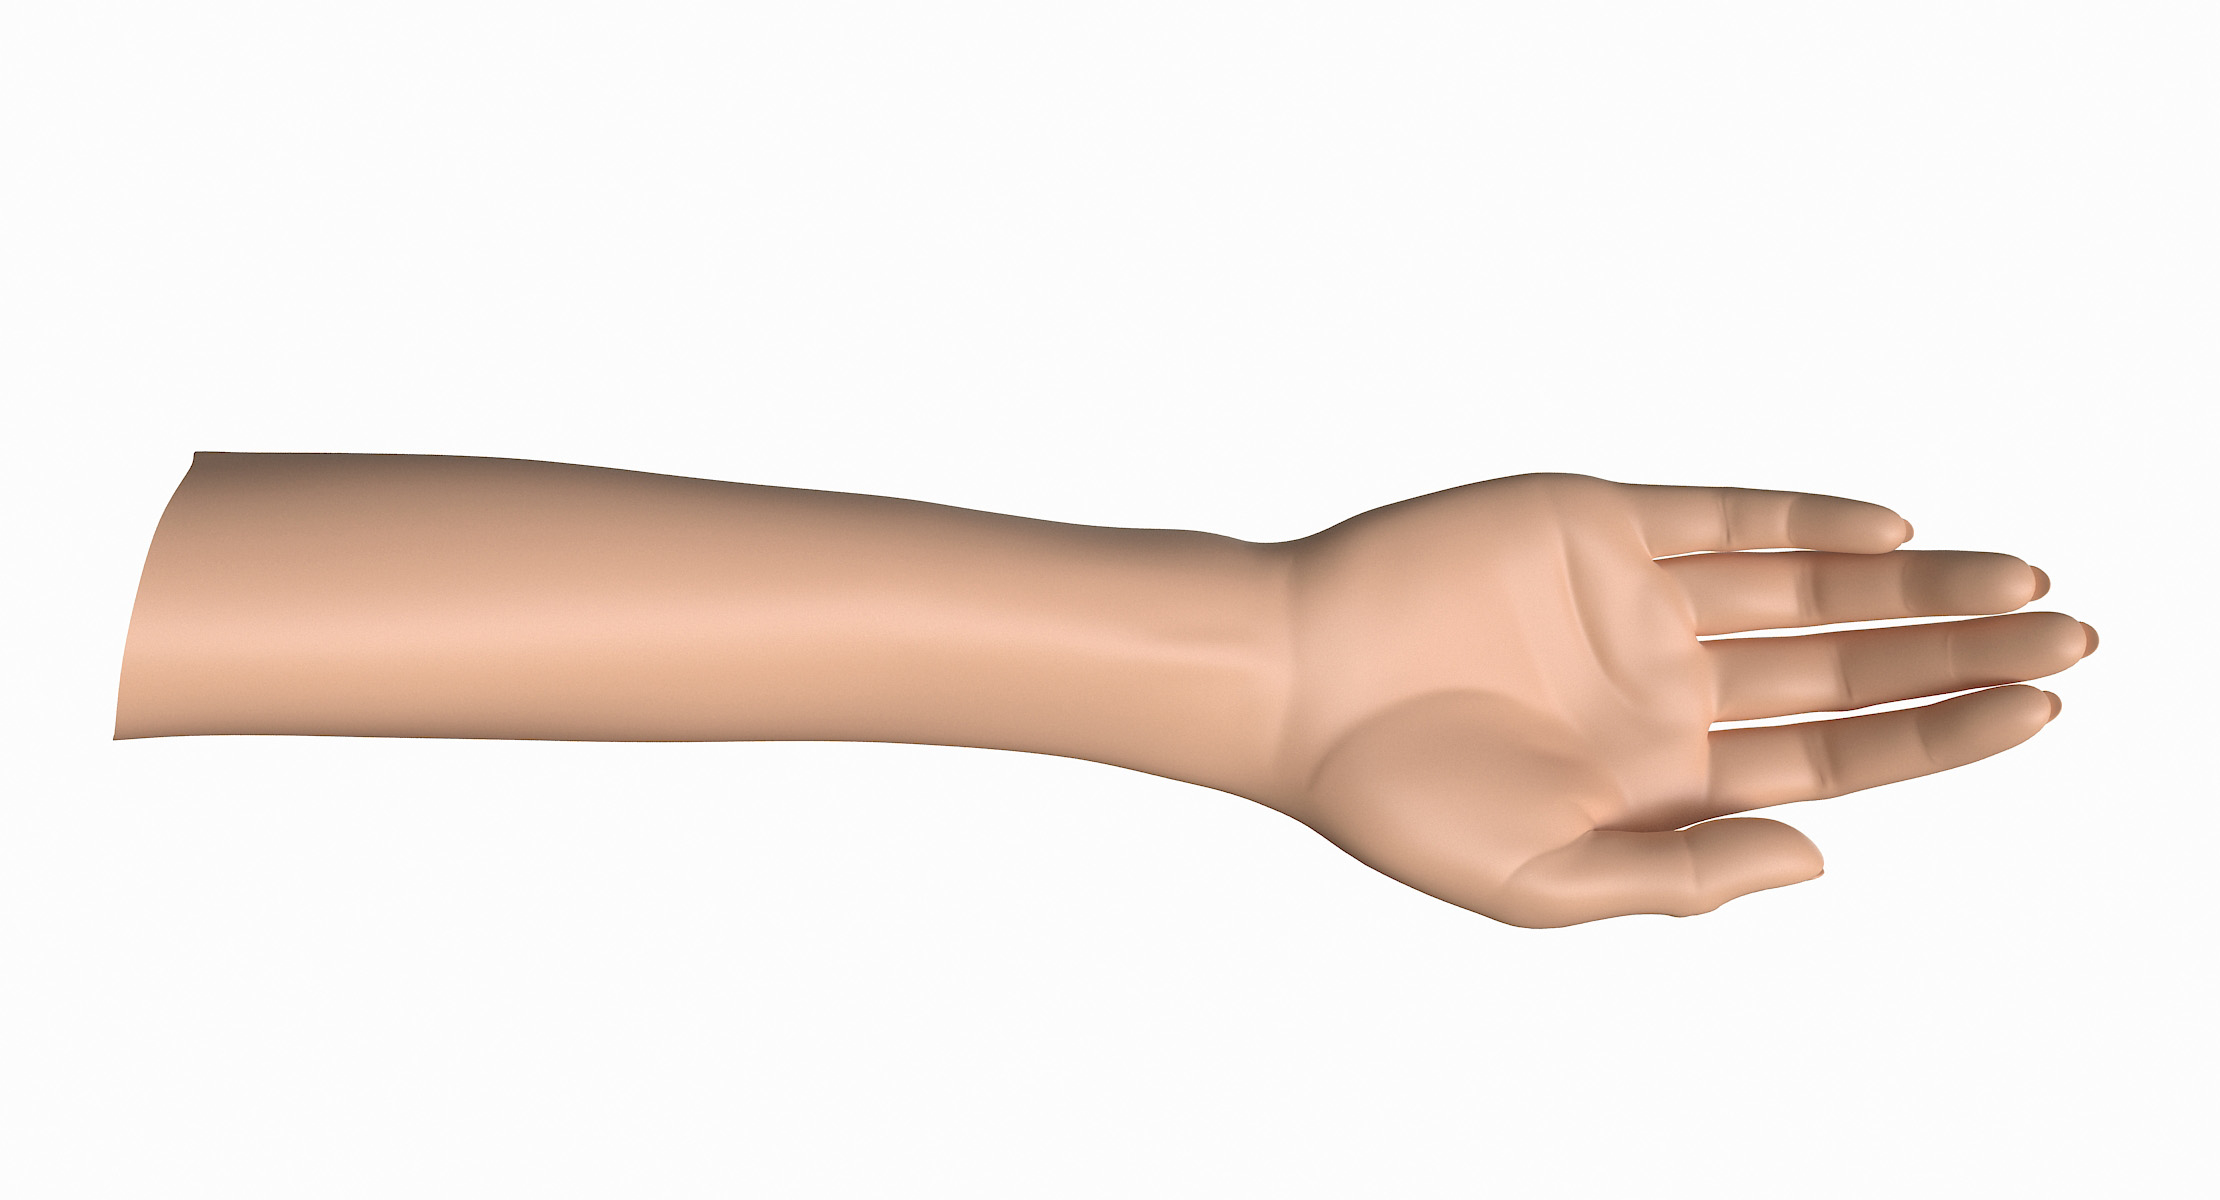 Female arm pose b 3D model - TurboSquid 1199416